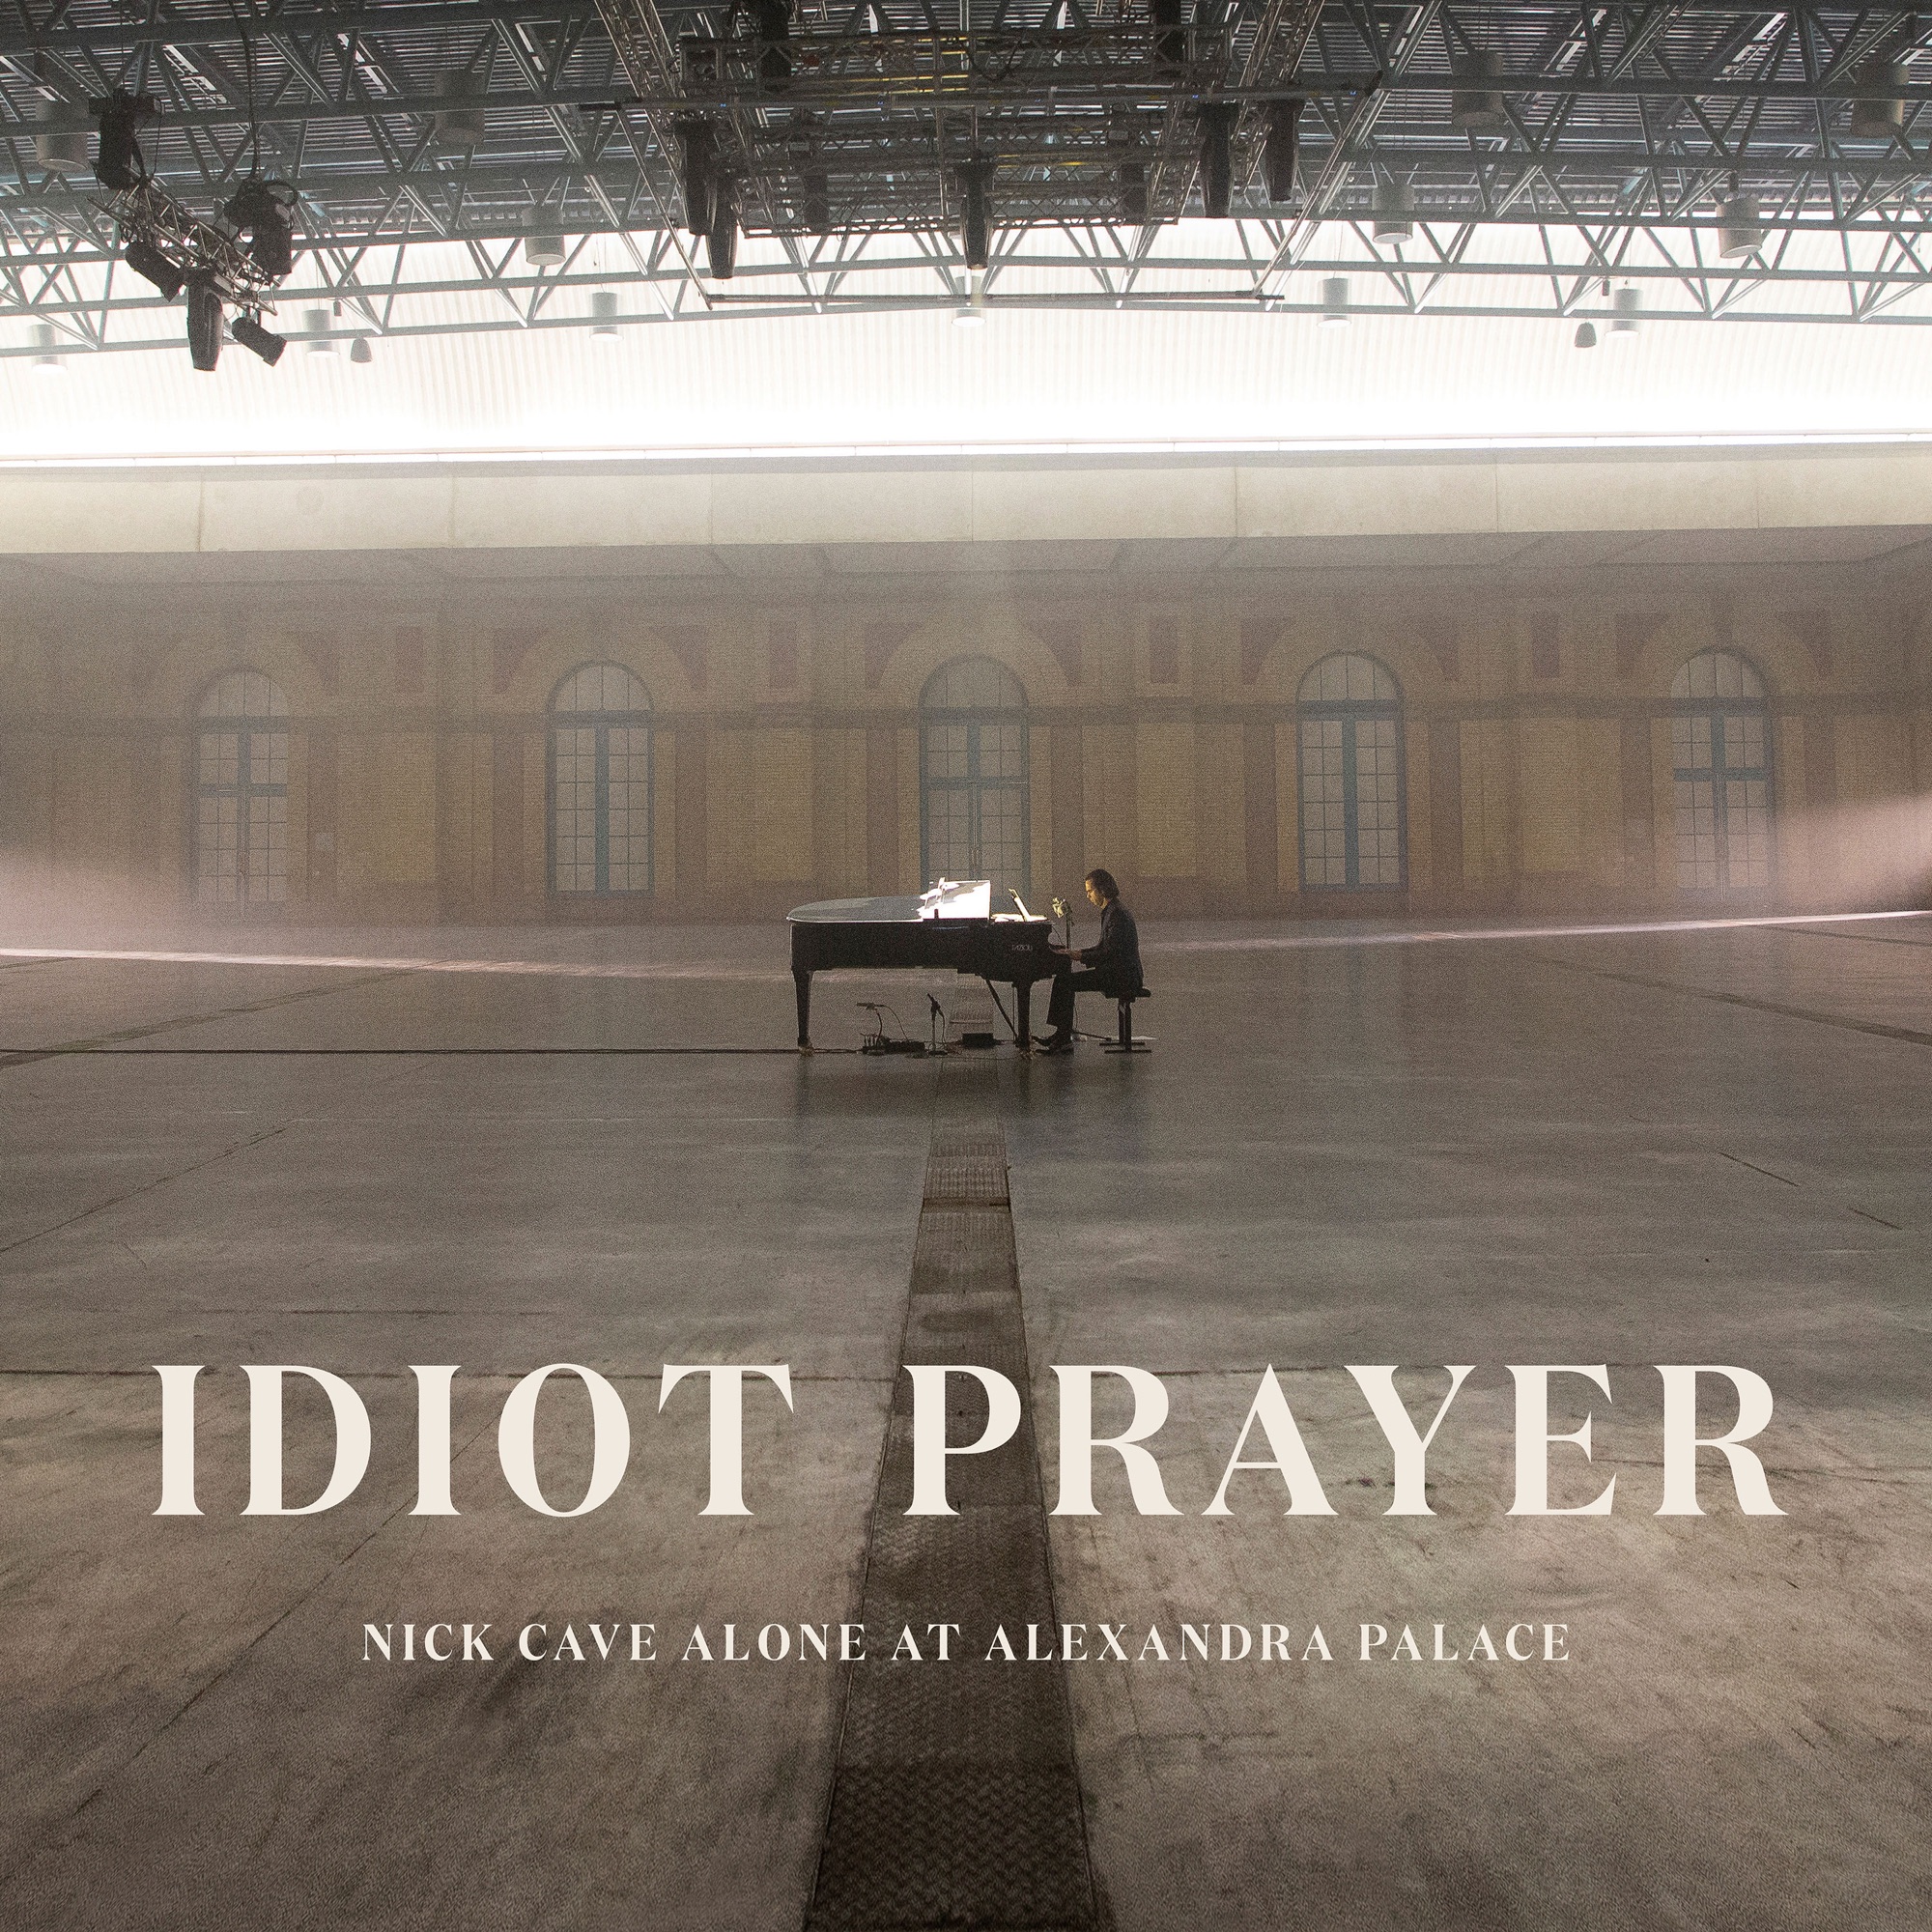 Nick Cave & The Bad Seeds - Idiot Prayer (Nick Cave Alone at Alexandra Palace)